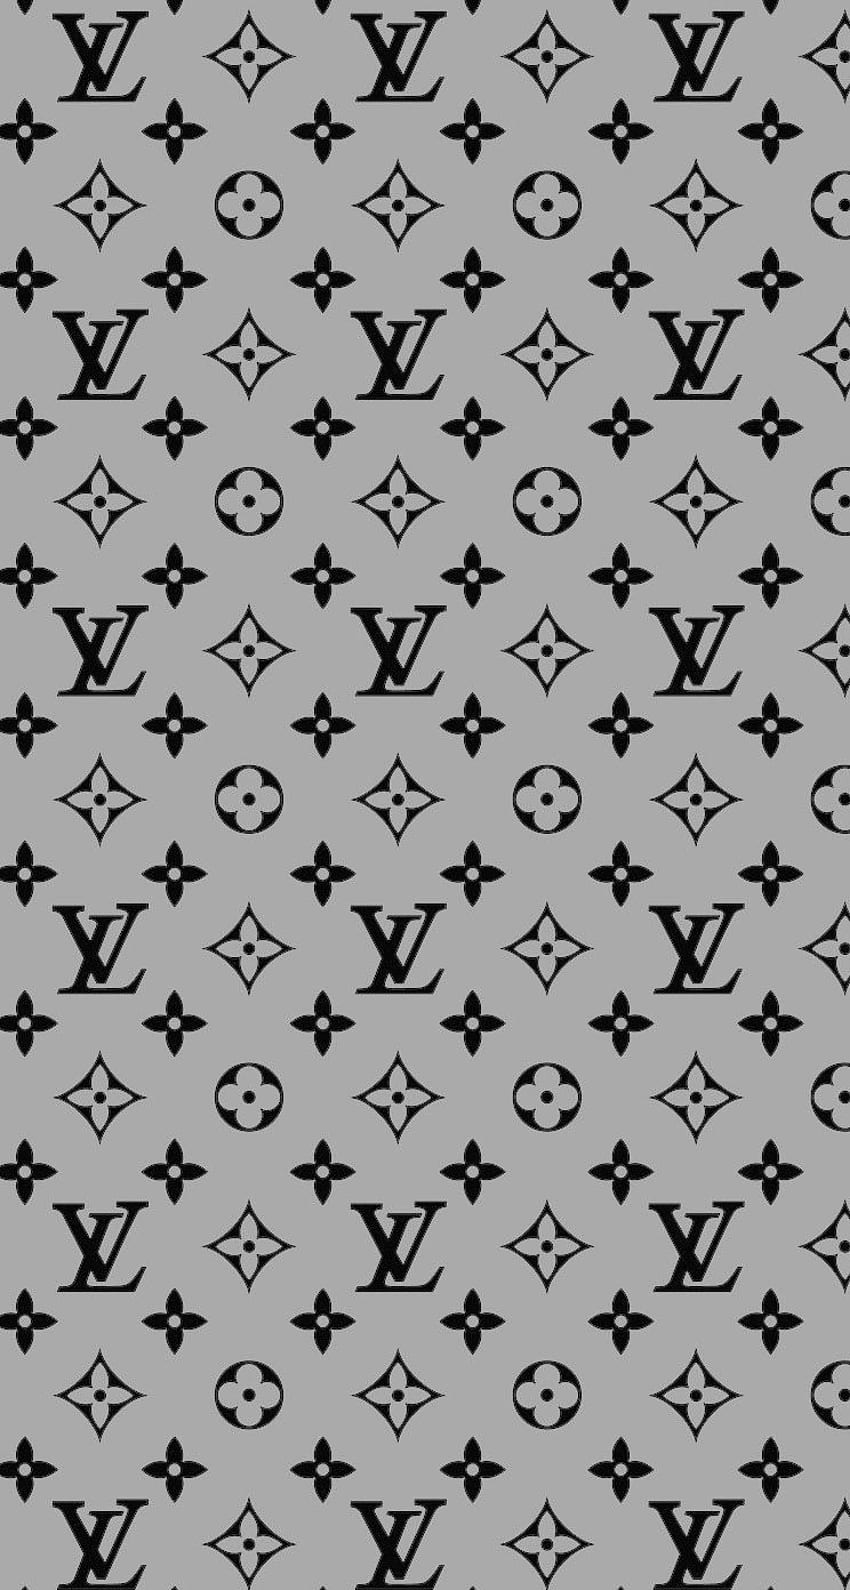 Louis Vuitton background. Hypebeast , Art iphone, Apple watch, Black Louis  Vuitton HD phone wallpaper